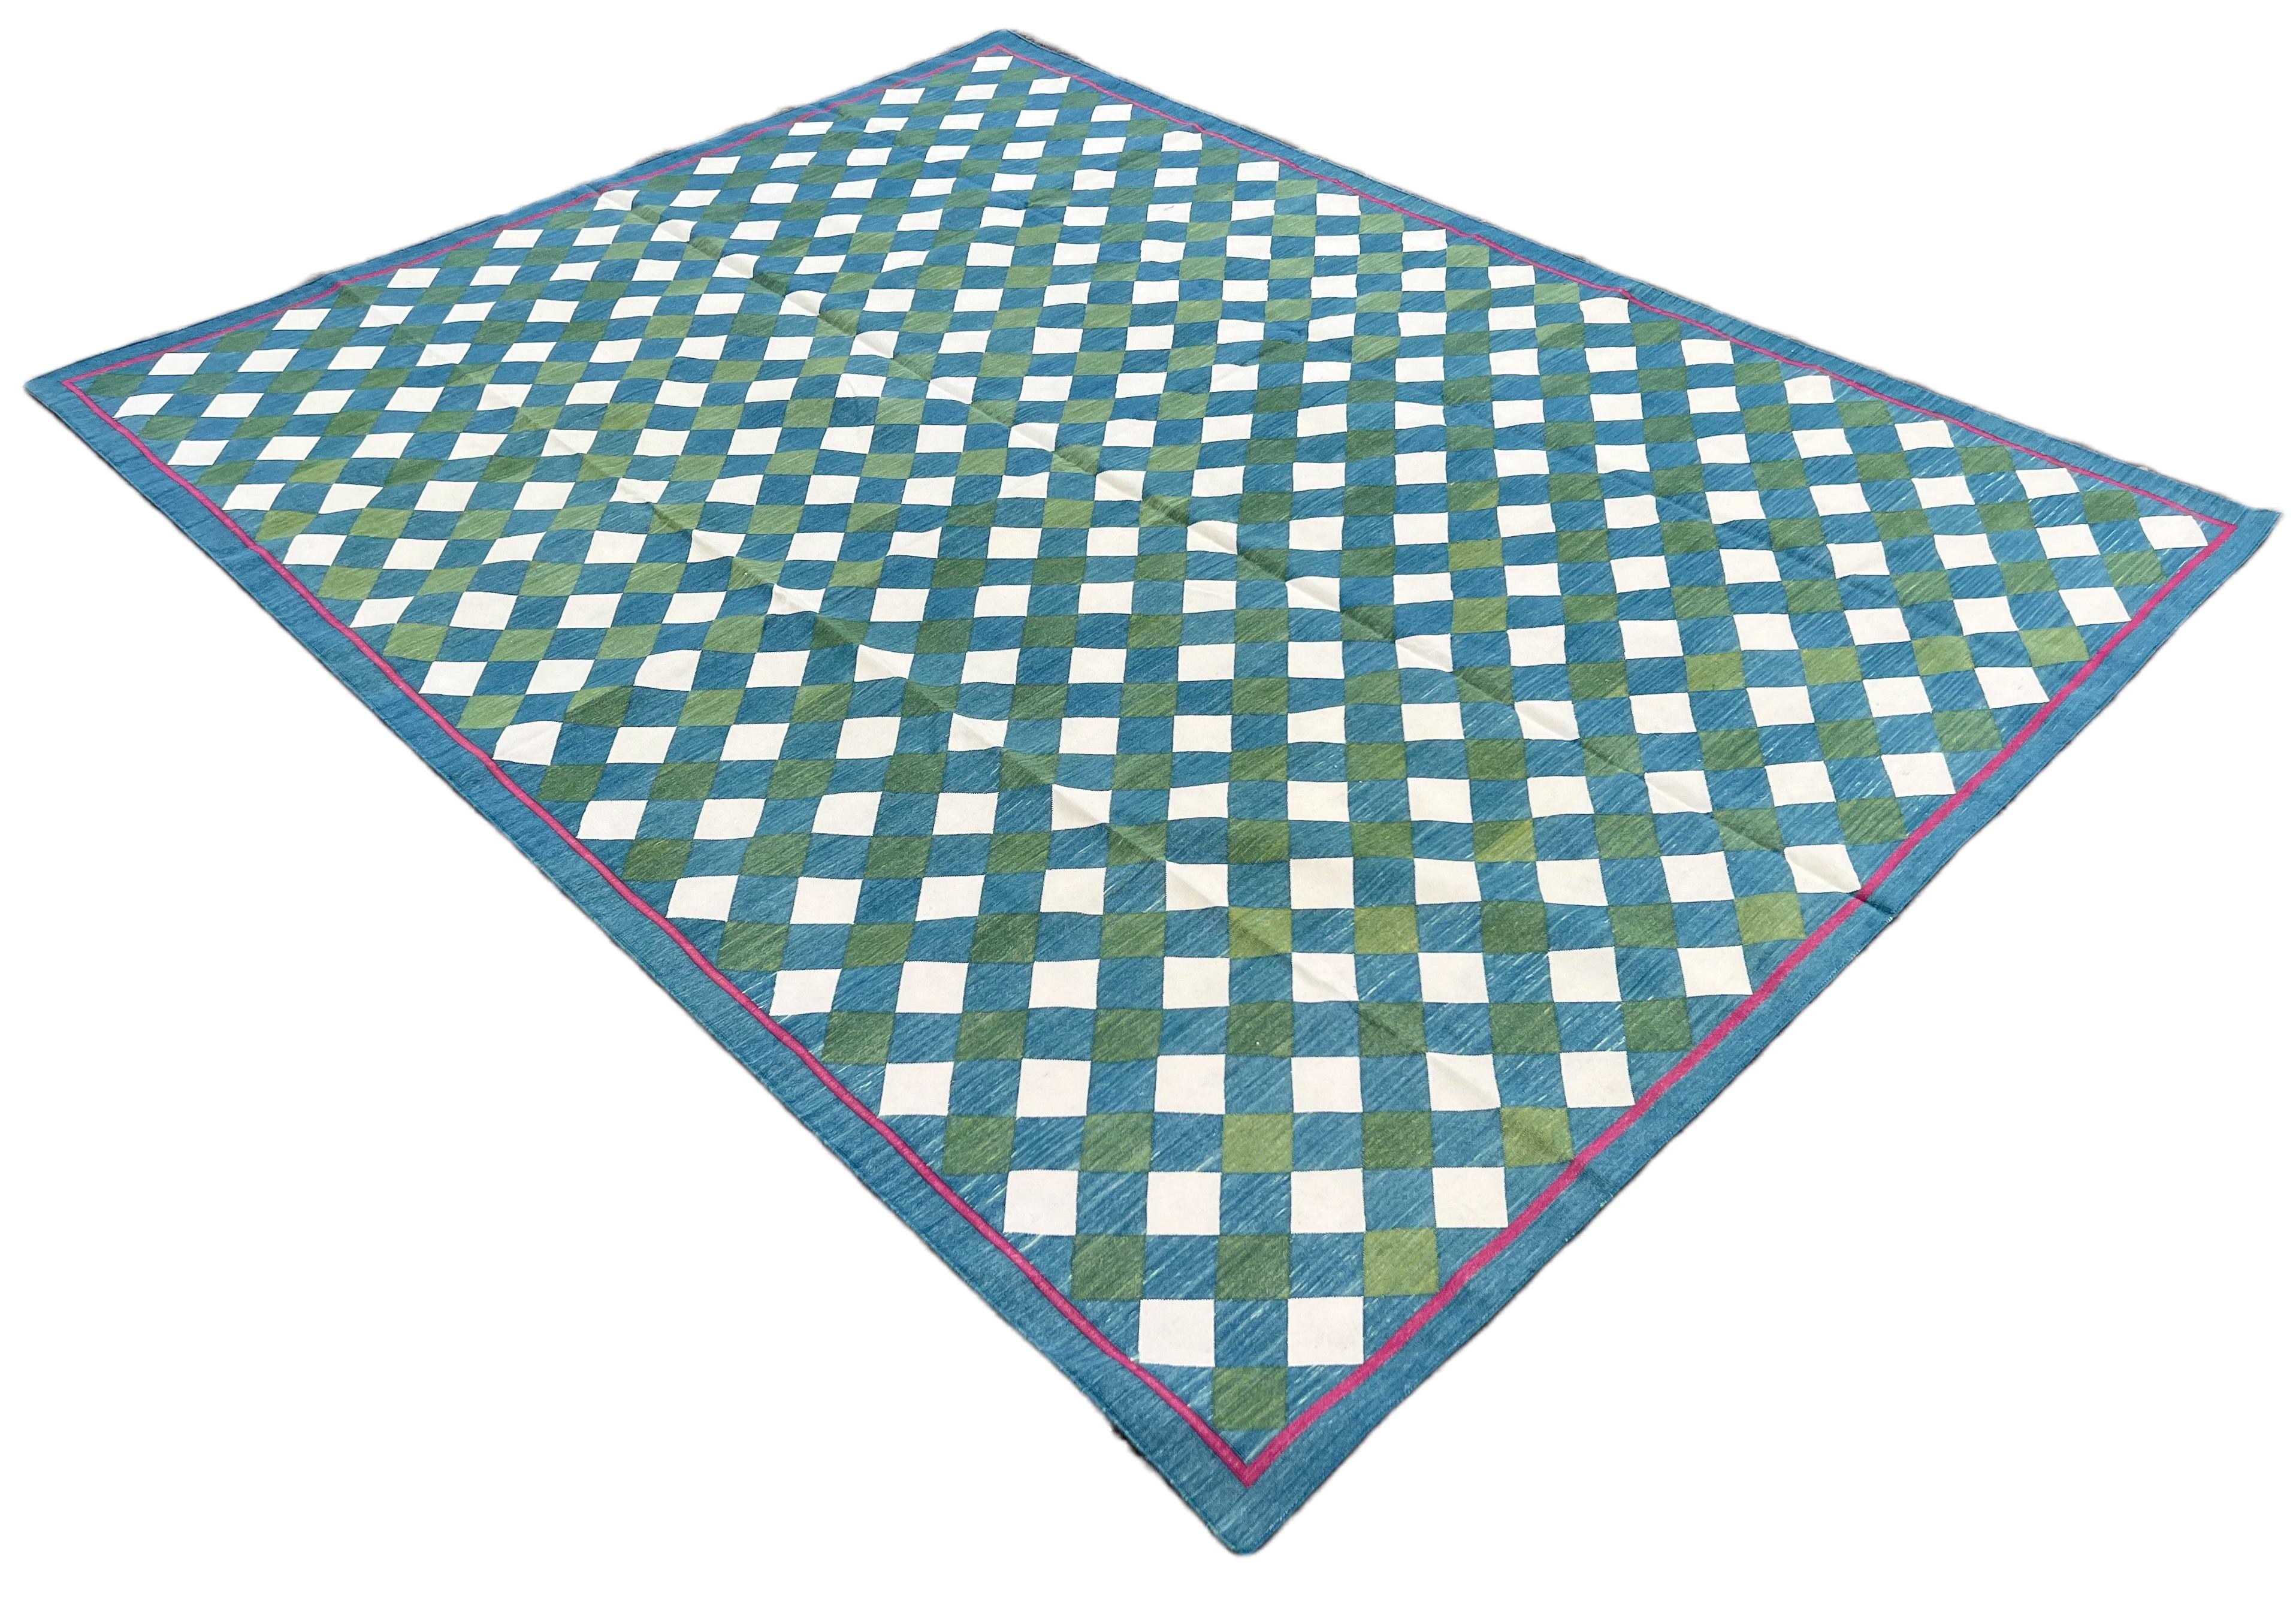 Baumwolle pflanzlich gefärbt Bereich Teppich, Teal blau, Creme und grün kariert indischen Teppich-6'x9'
Diese speziellen flachgewebten Dhurries werden aus 15-fachem Garn aus 100% Baumwolle handgewebt. Aufgrund der speziellen Fertigungstechniken, die